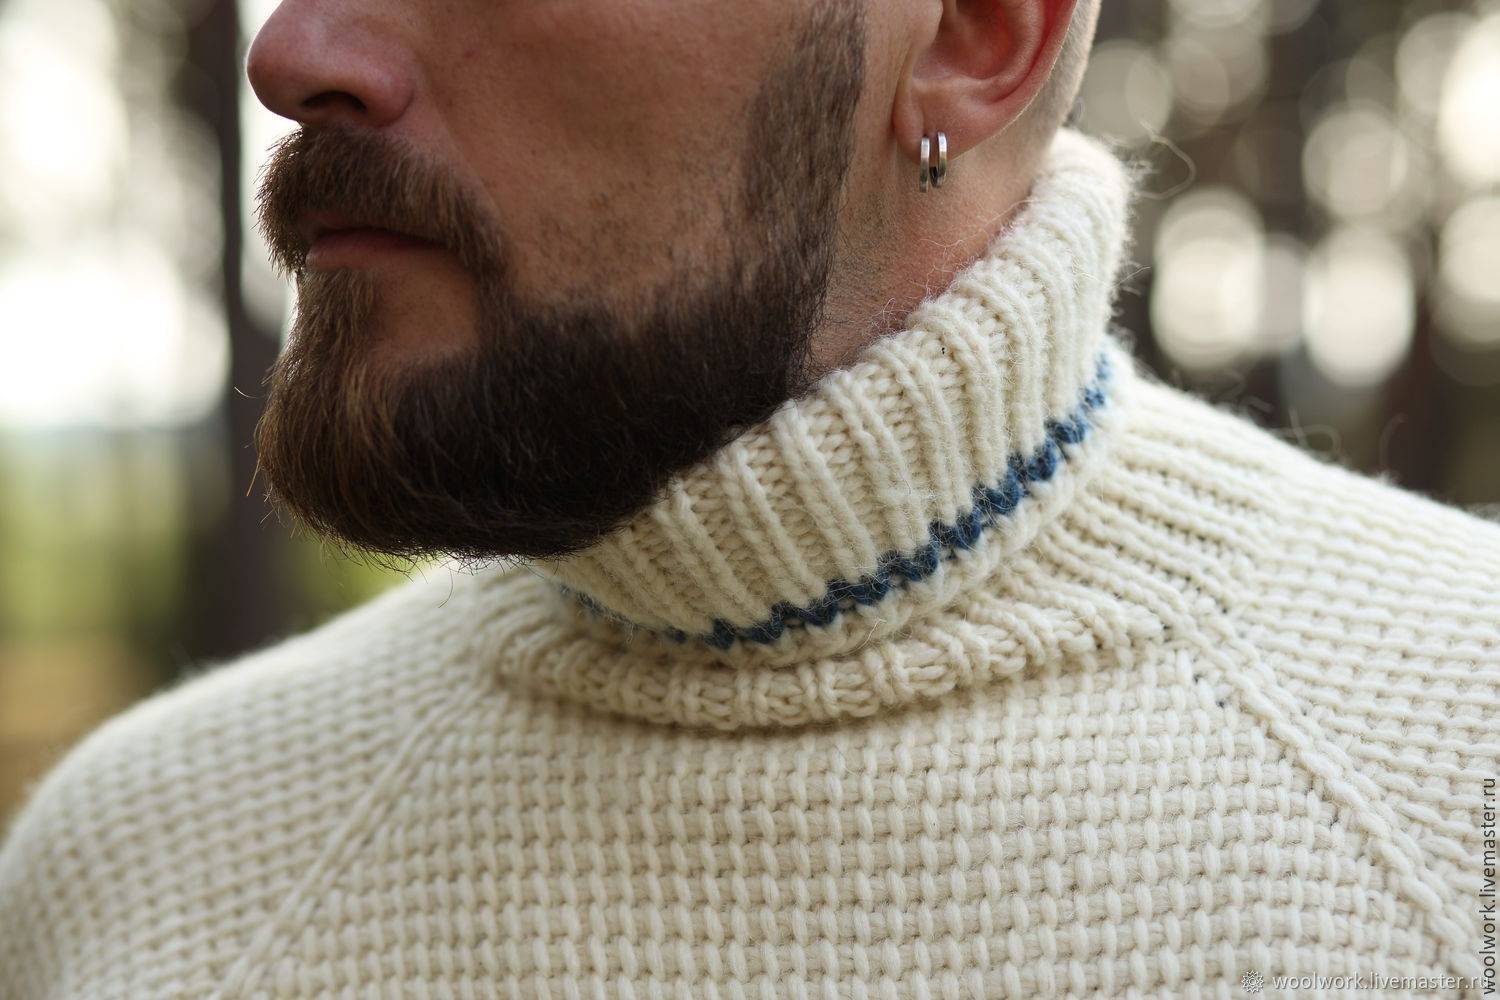 Как выбрать и хранить мужской свитер? из чего бывают свитера и как они появились?